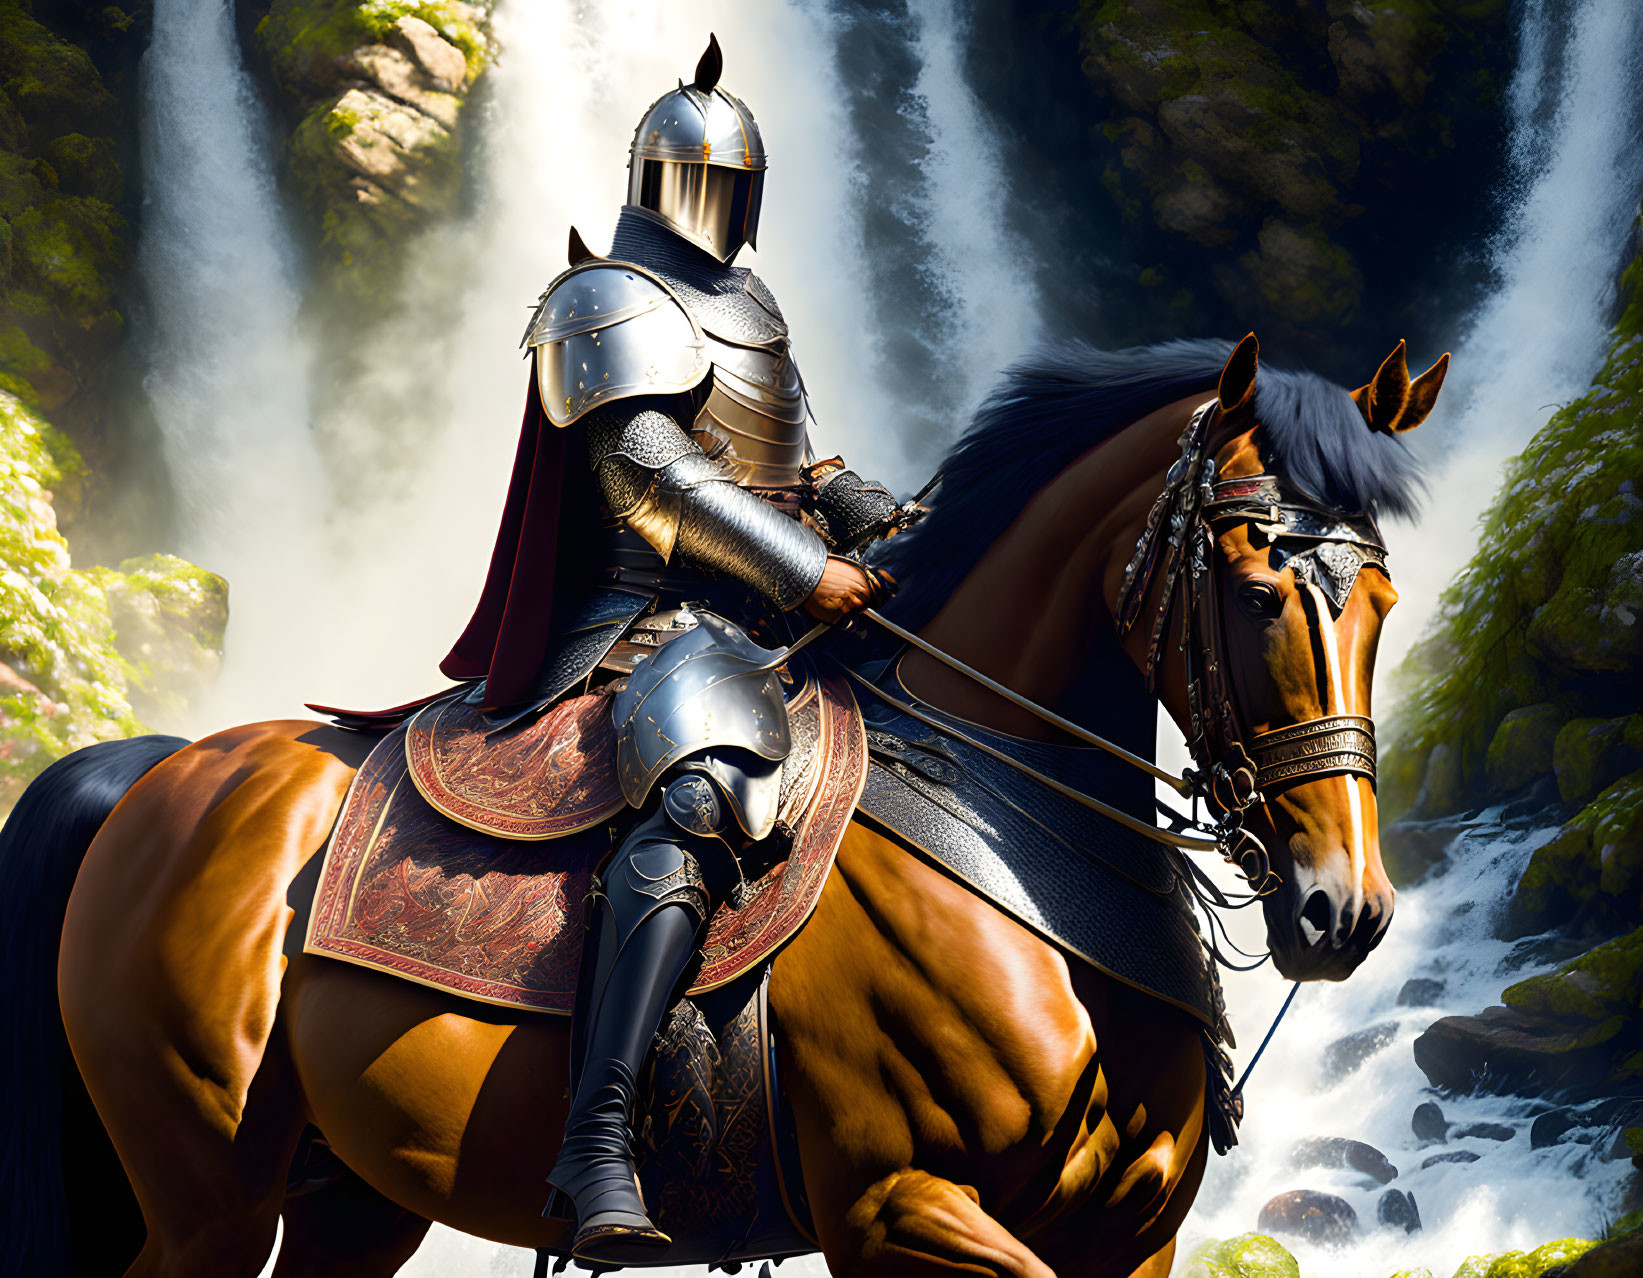 Knight on Brown Horse Near Waterfall in Rocky Terrain